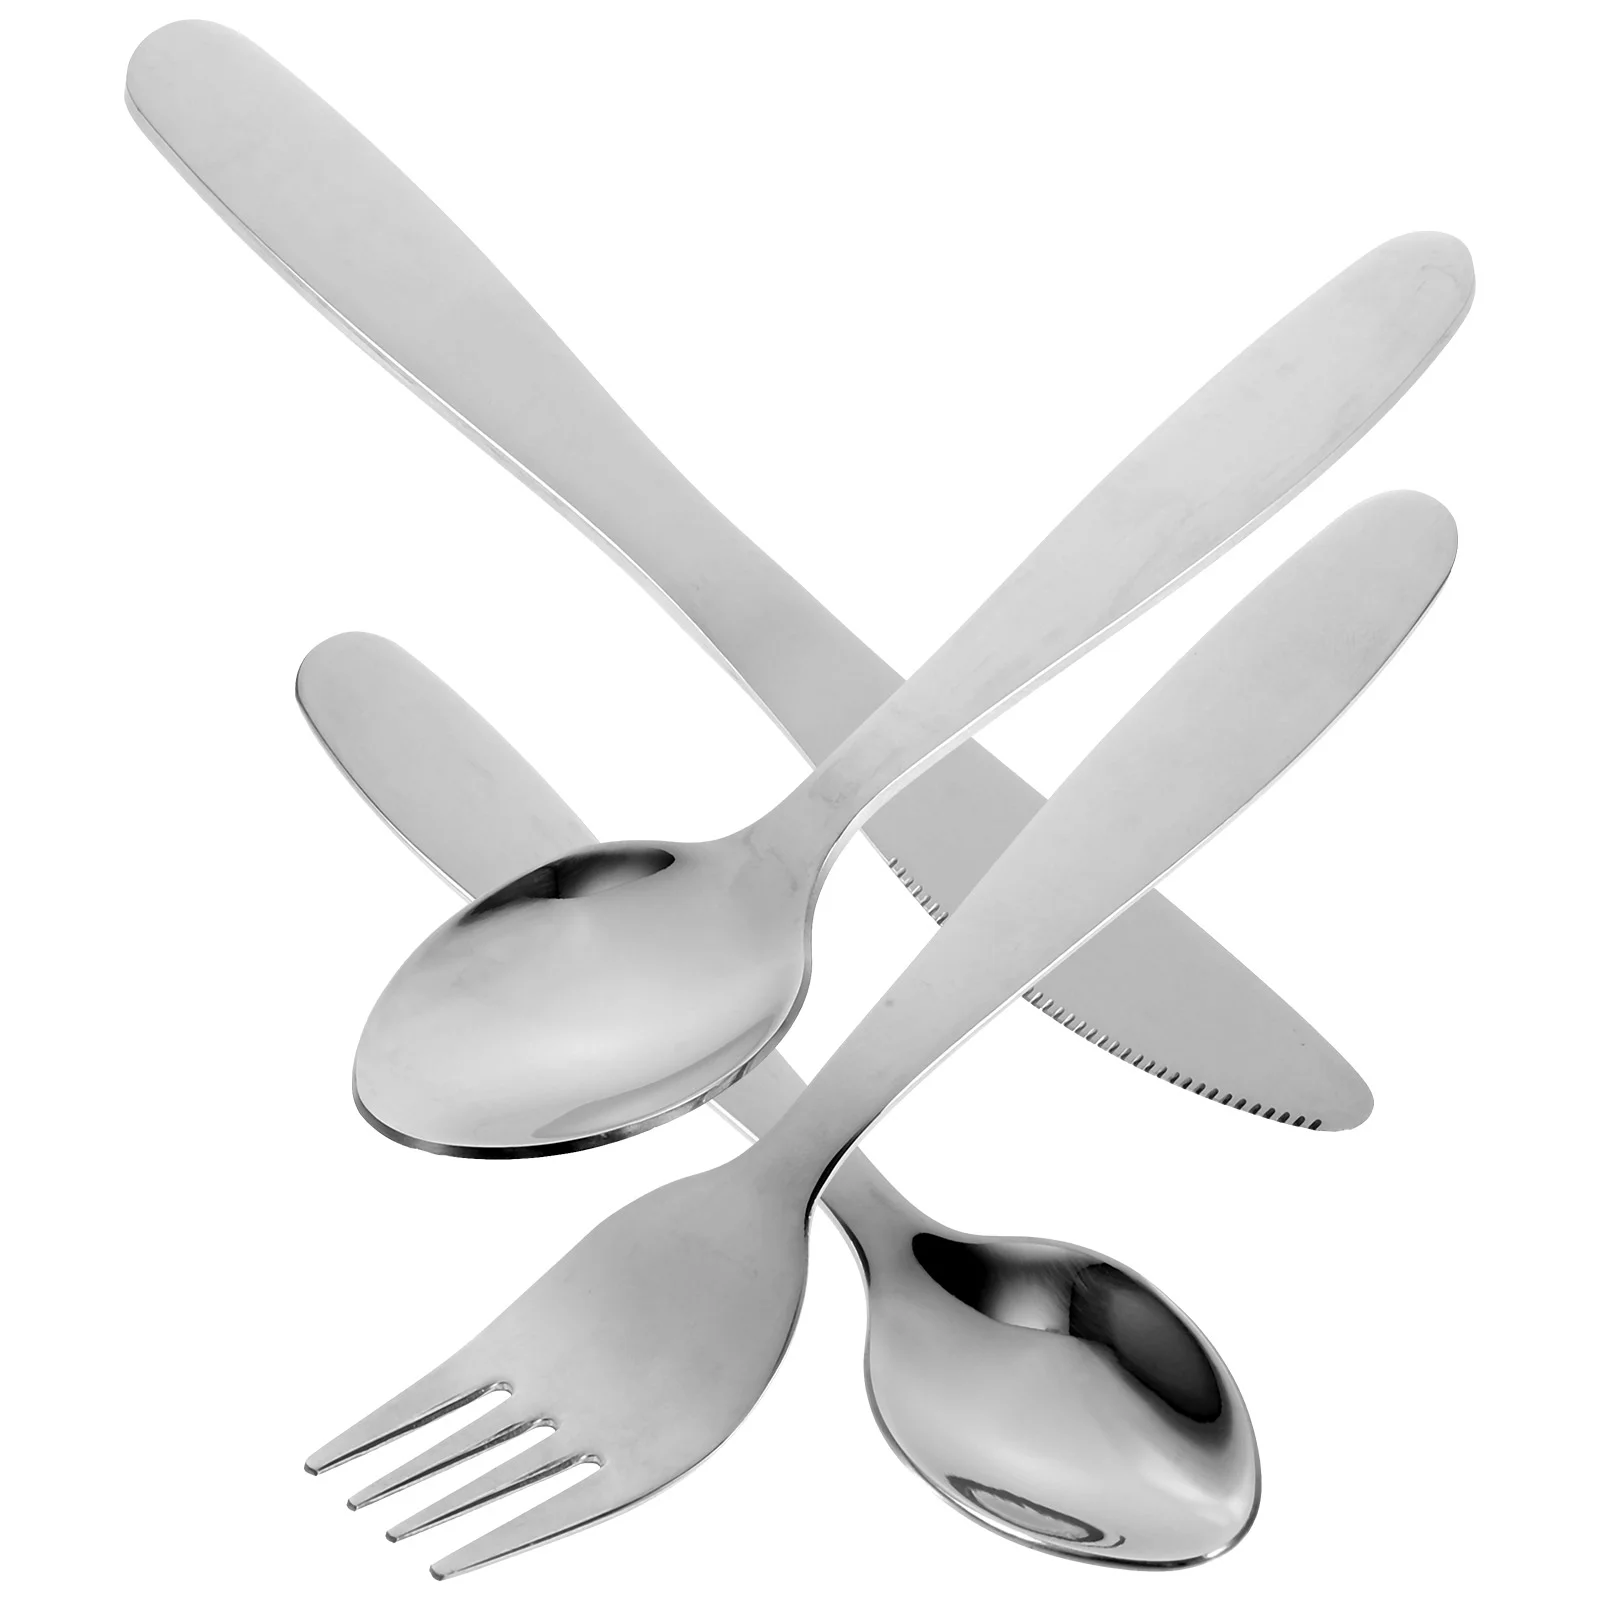 

Tableware Steak Fork Spoon Kit Portable Flatware Stainless Steel Forks Cutlery Children Metal Dinnerware Reusable Silverware